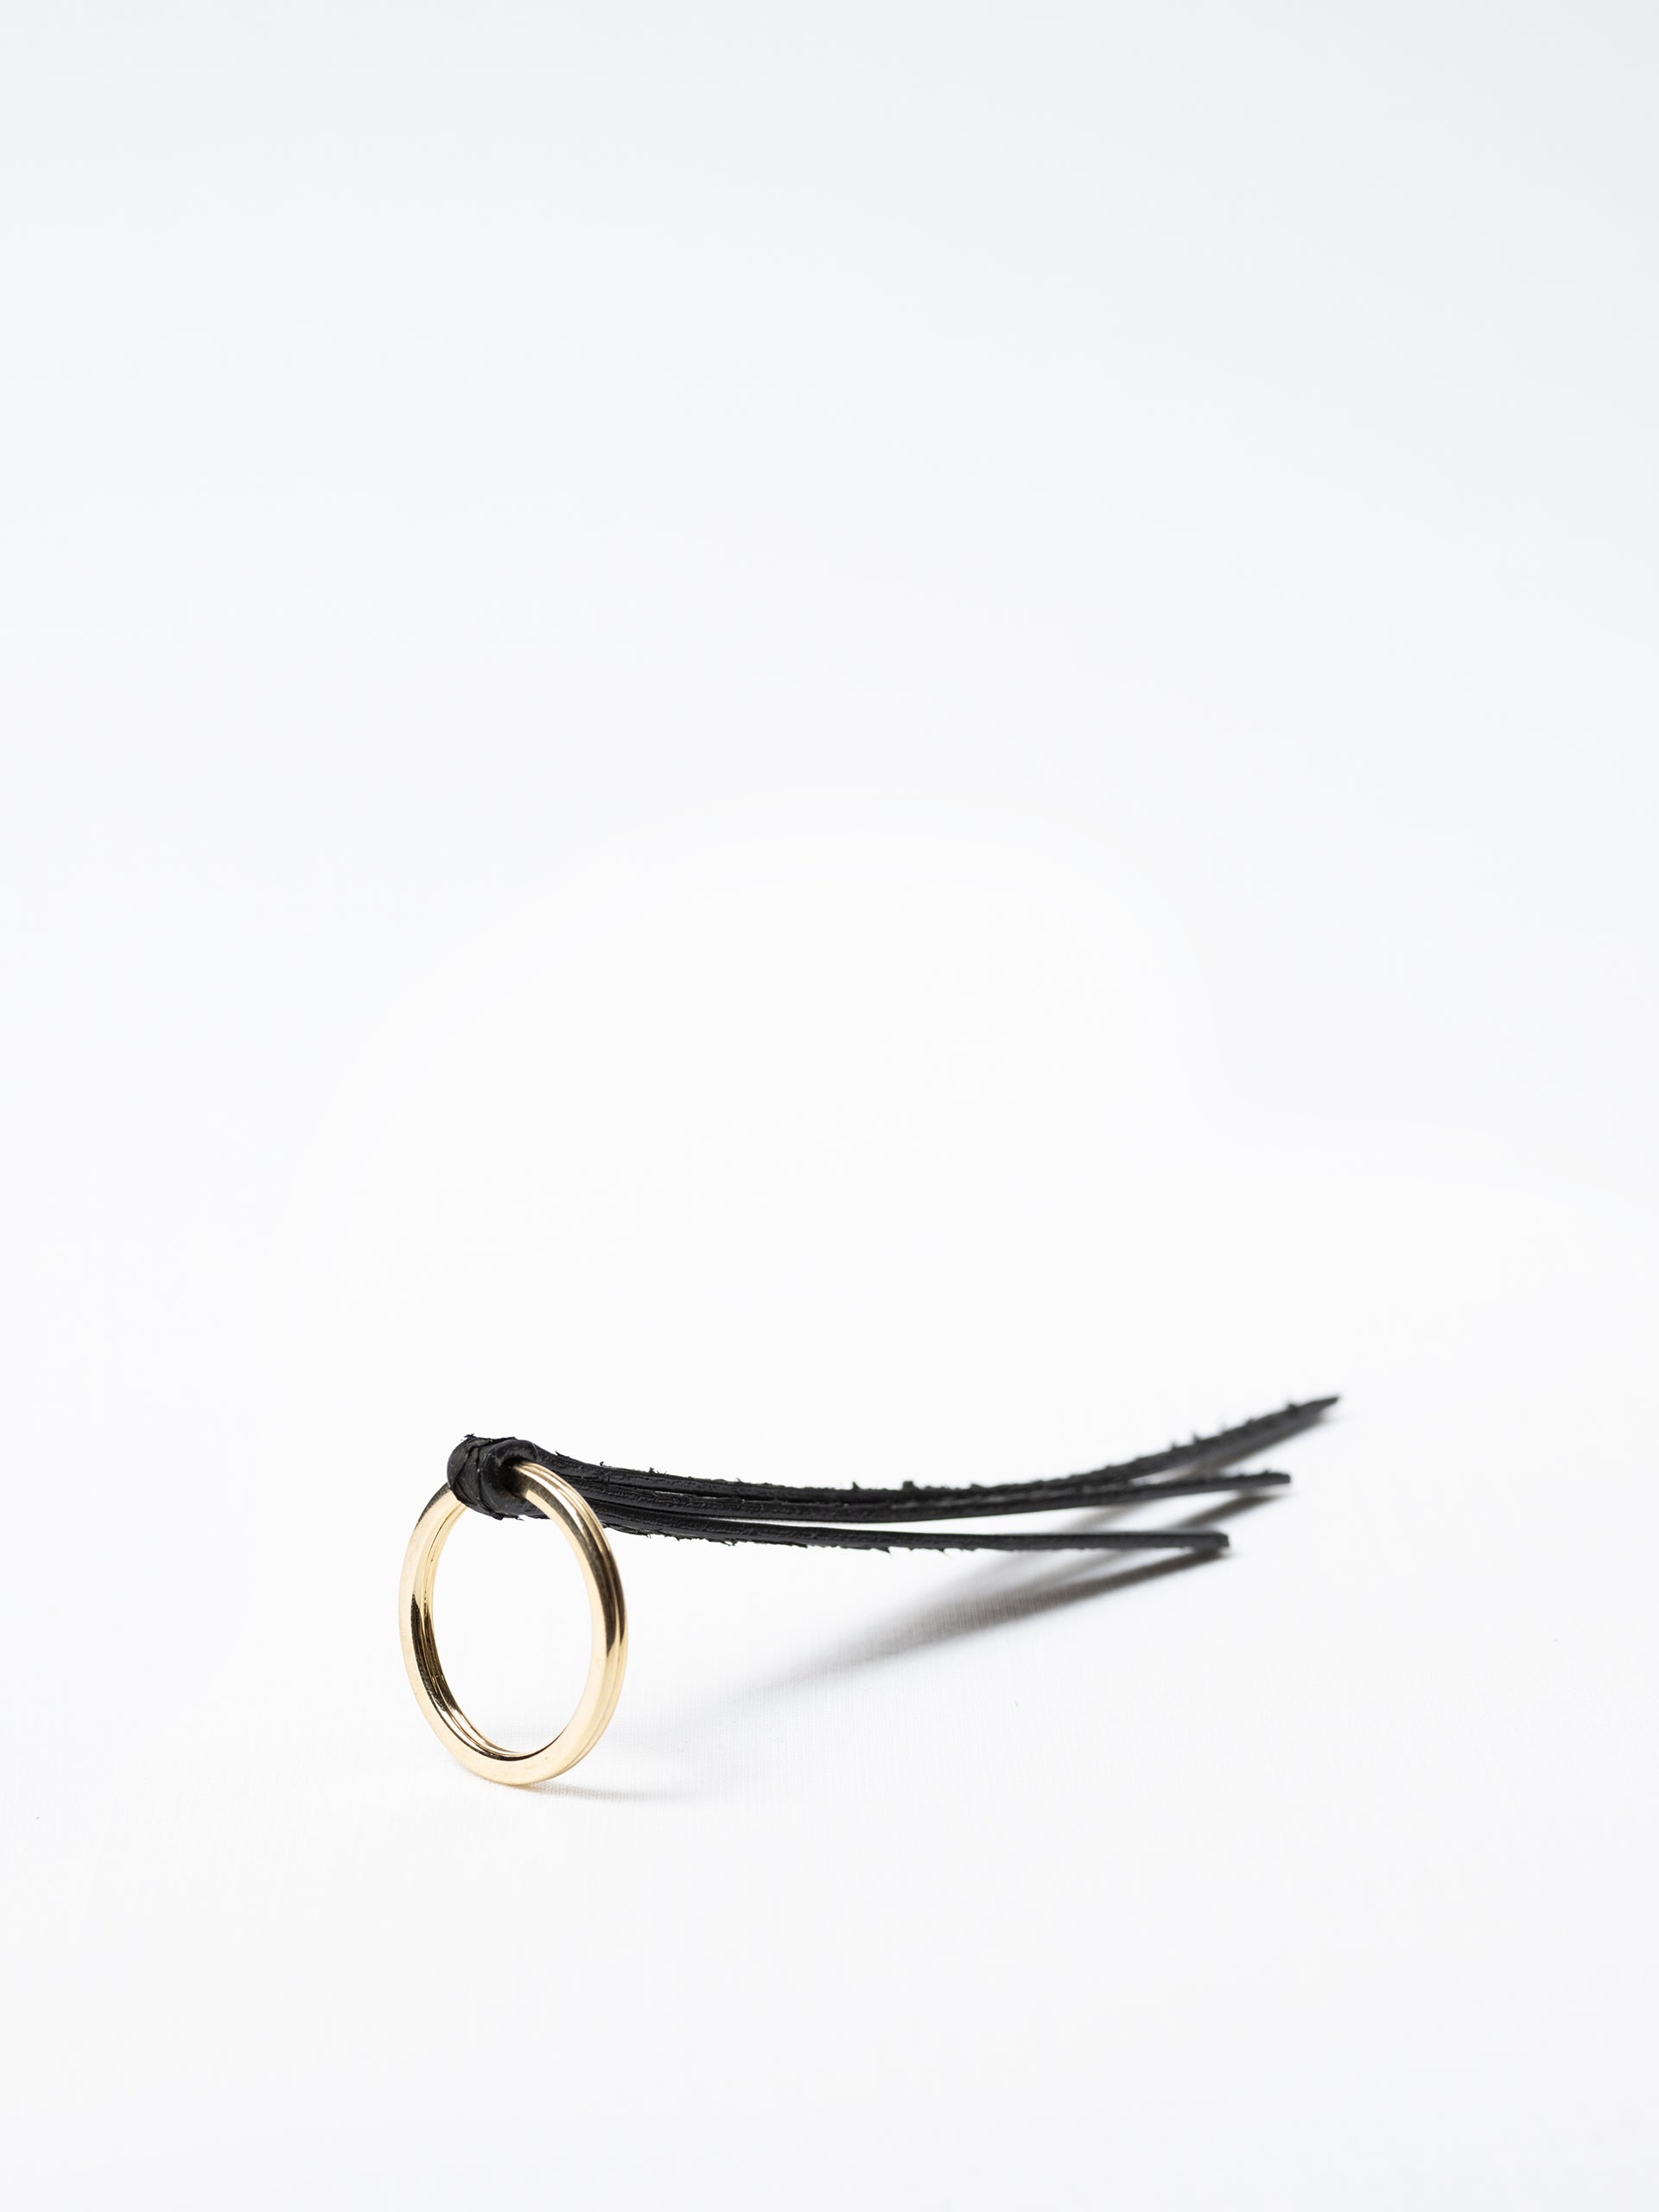 Seaweed Key Ring